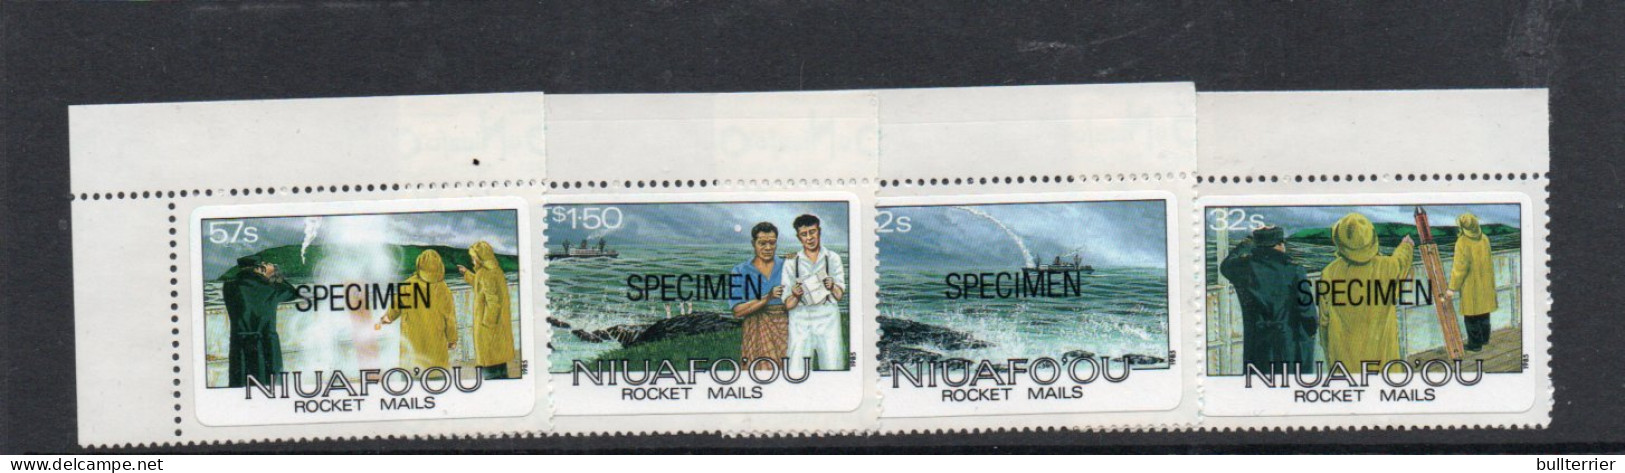 NIUAFOOU - 1985 - ROCKET MAILS SET OF 4   " SPECIMENS"  MINT NEVER HINGED  - Andere-Oceanië